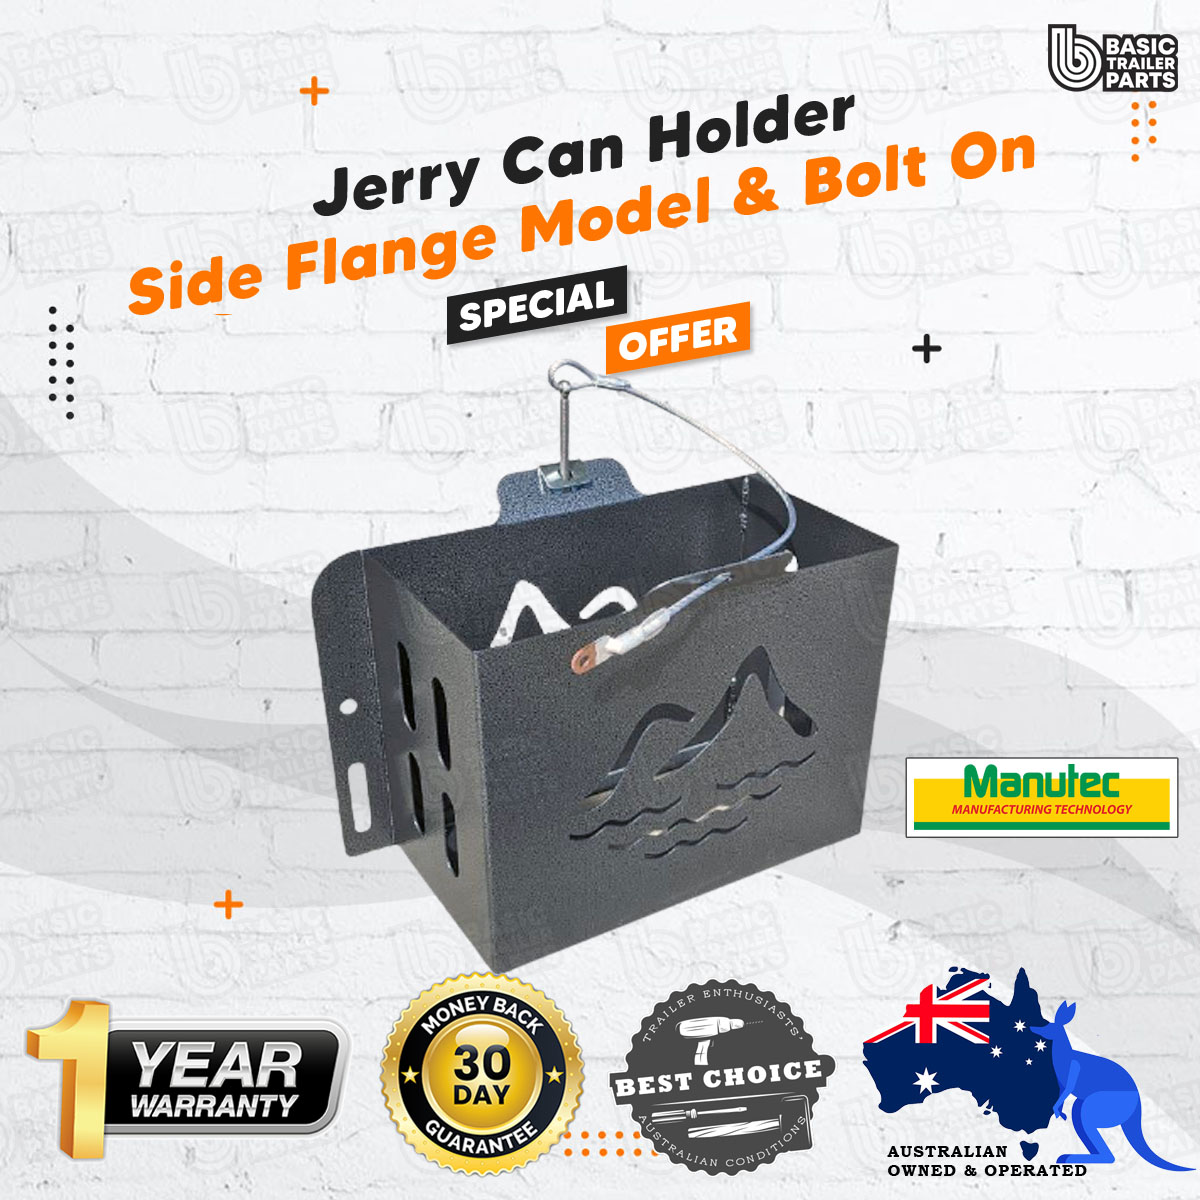 Jerry Can Holder - With Side Flange Model, Bolt On, Hammertone Trailer  Caravan ⋆ Basic Trailer Parts - Australia's Best Trailer Parts